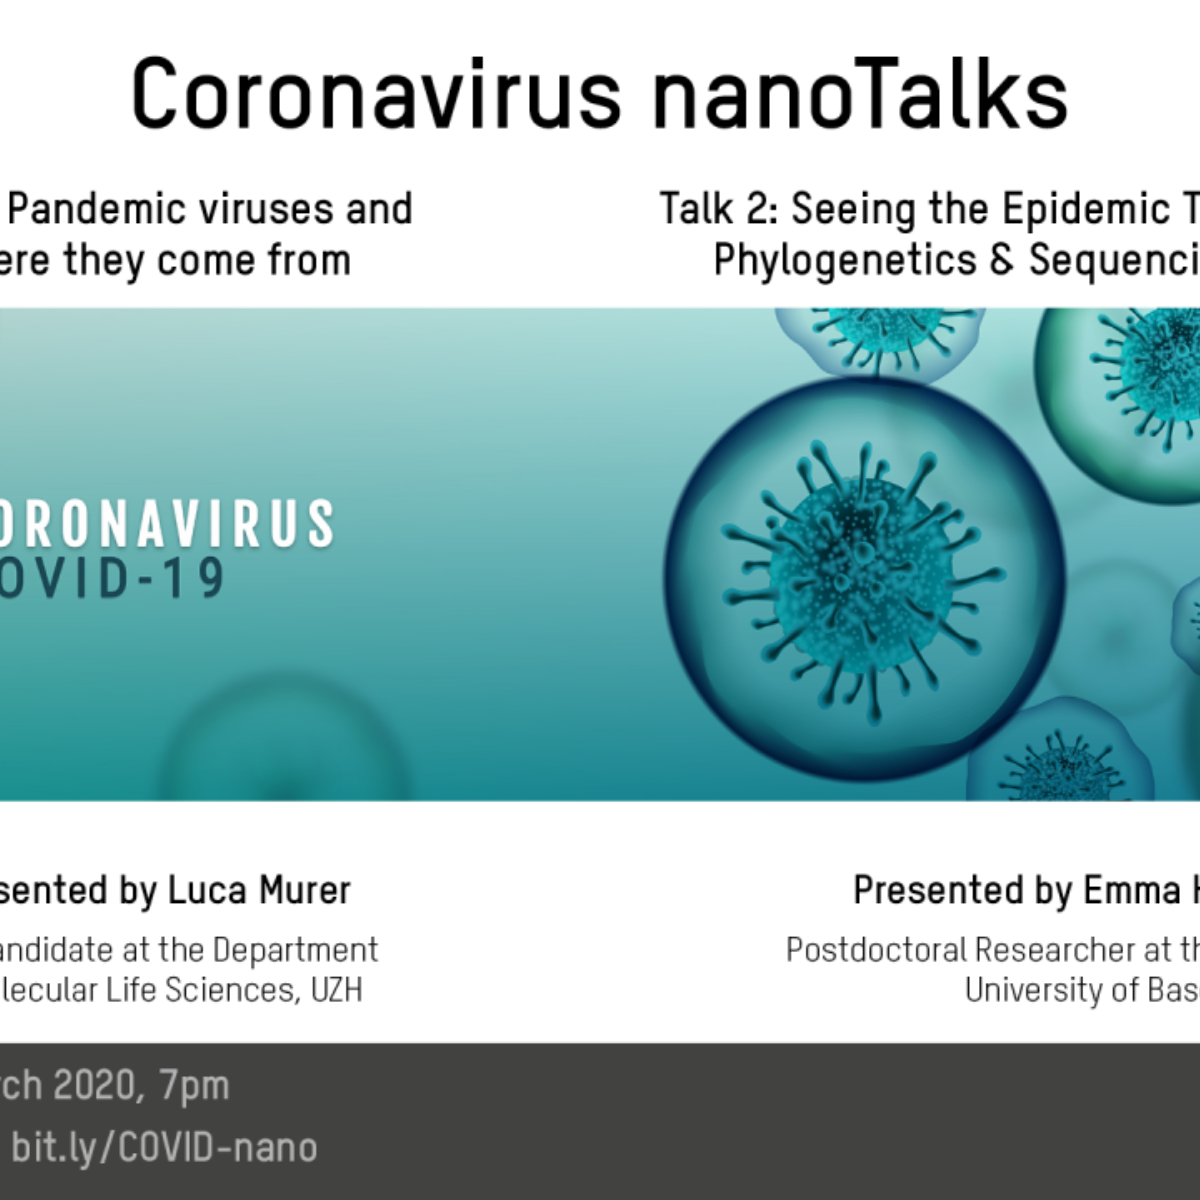 20200326 nanotalks coronavirus